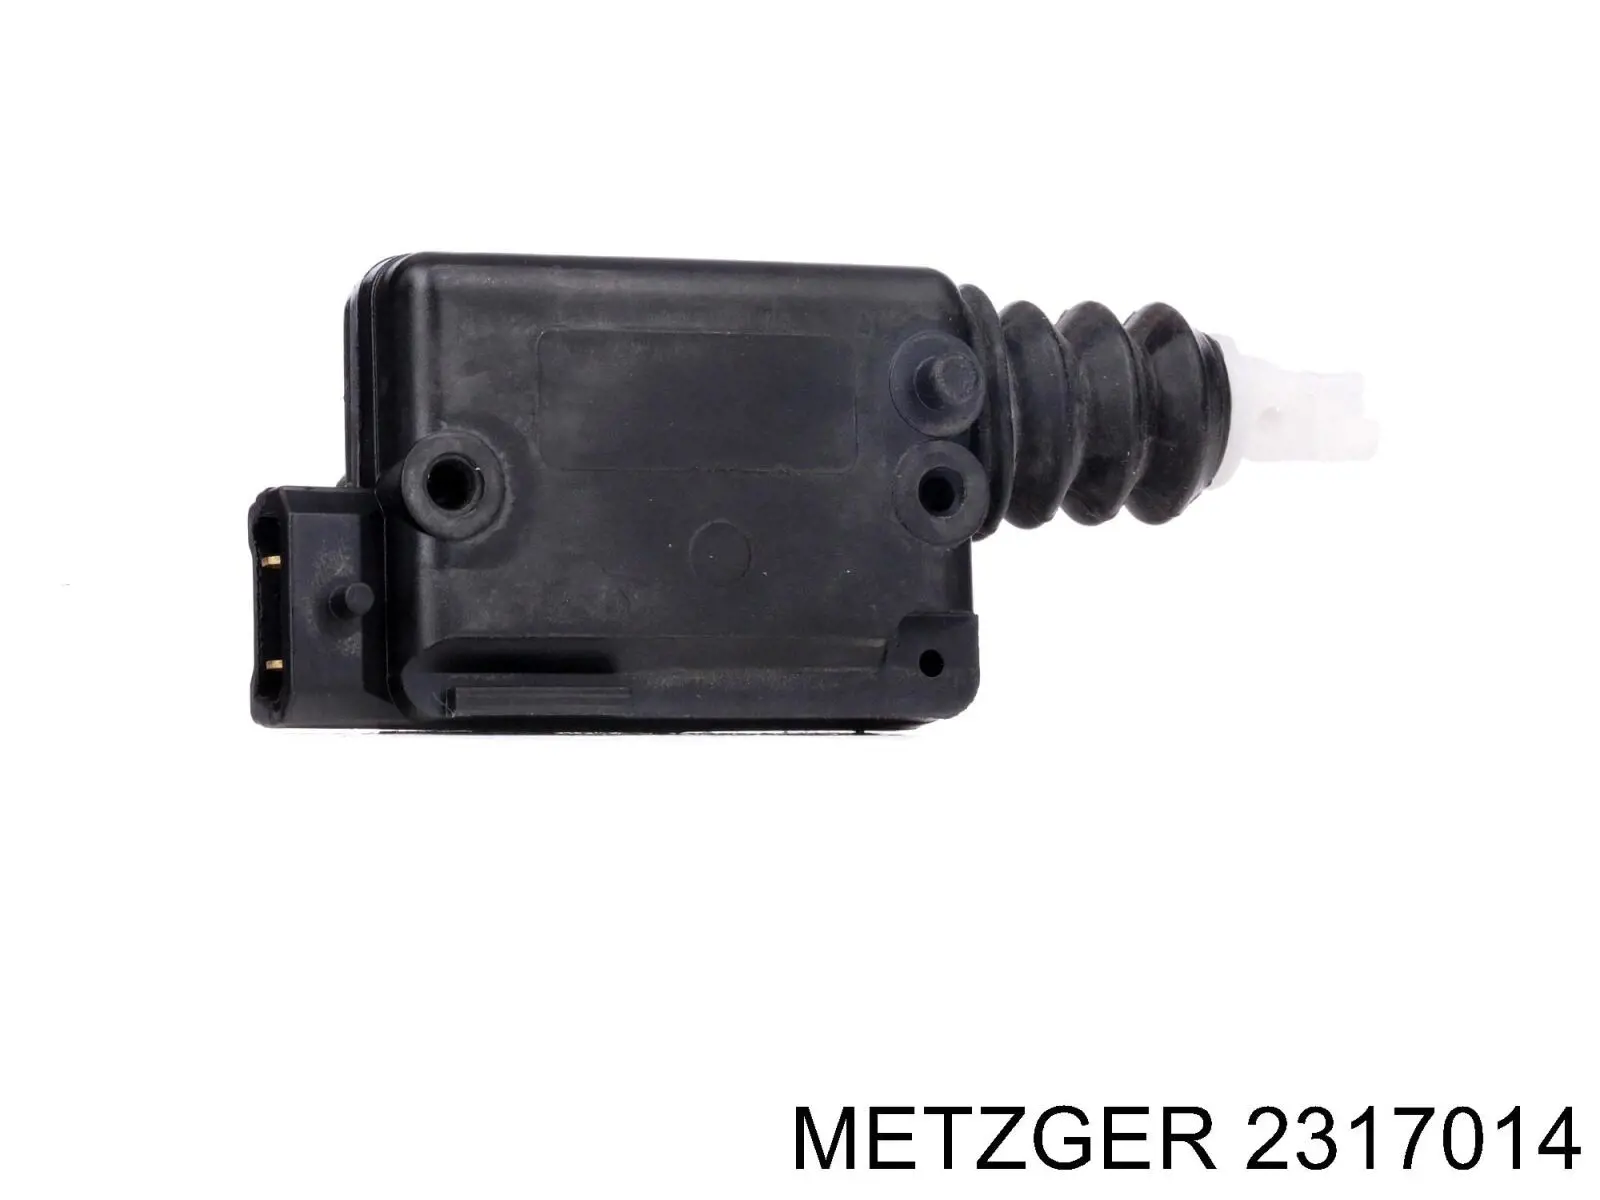 2317014 Metzger elemento de regulación, cierre centralizado, puerta delantera izquierda